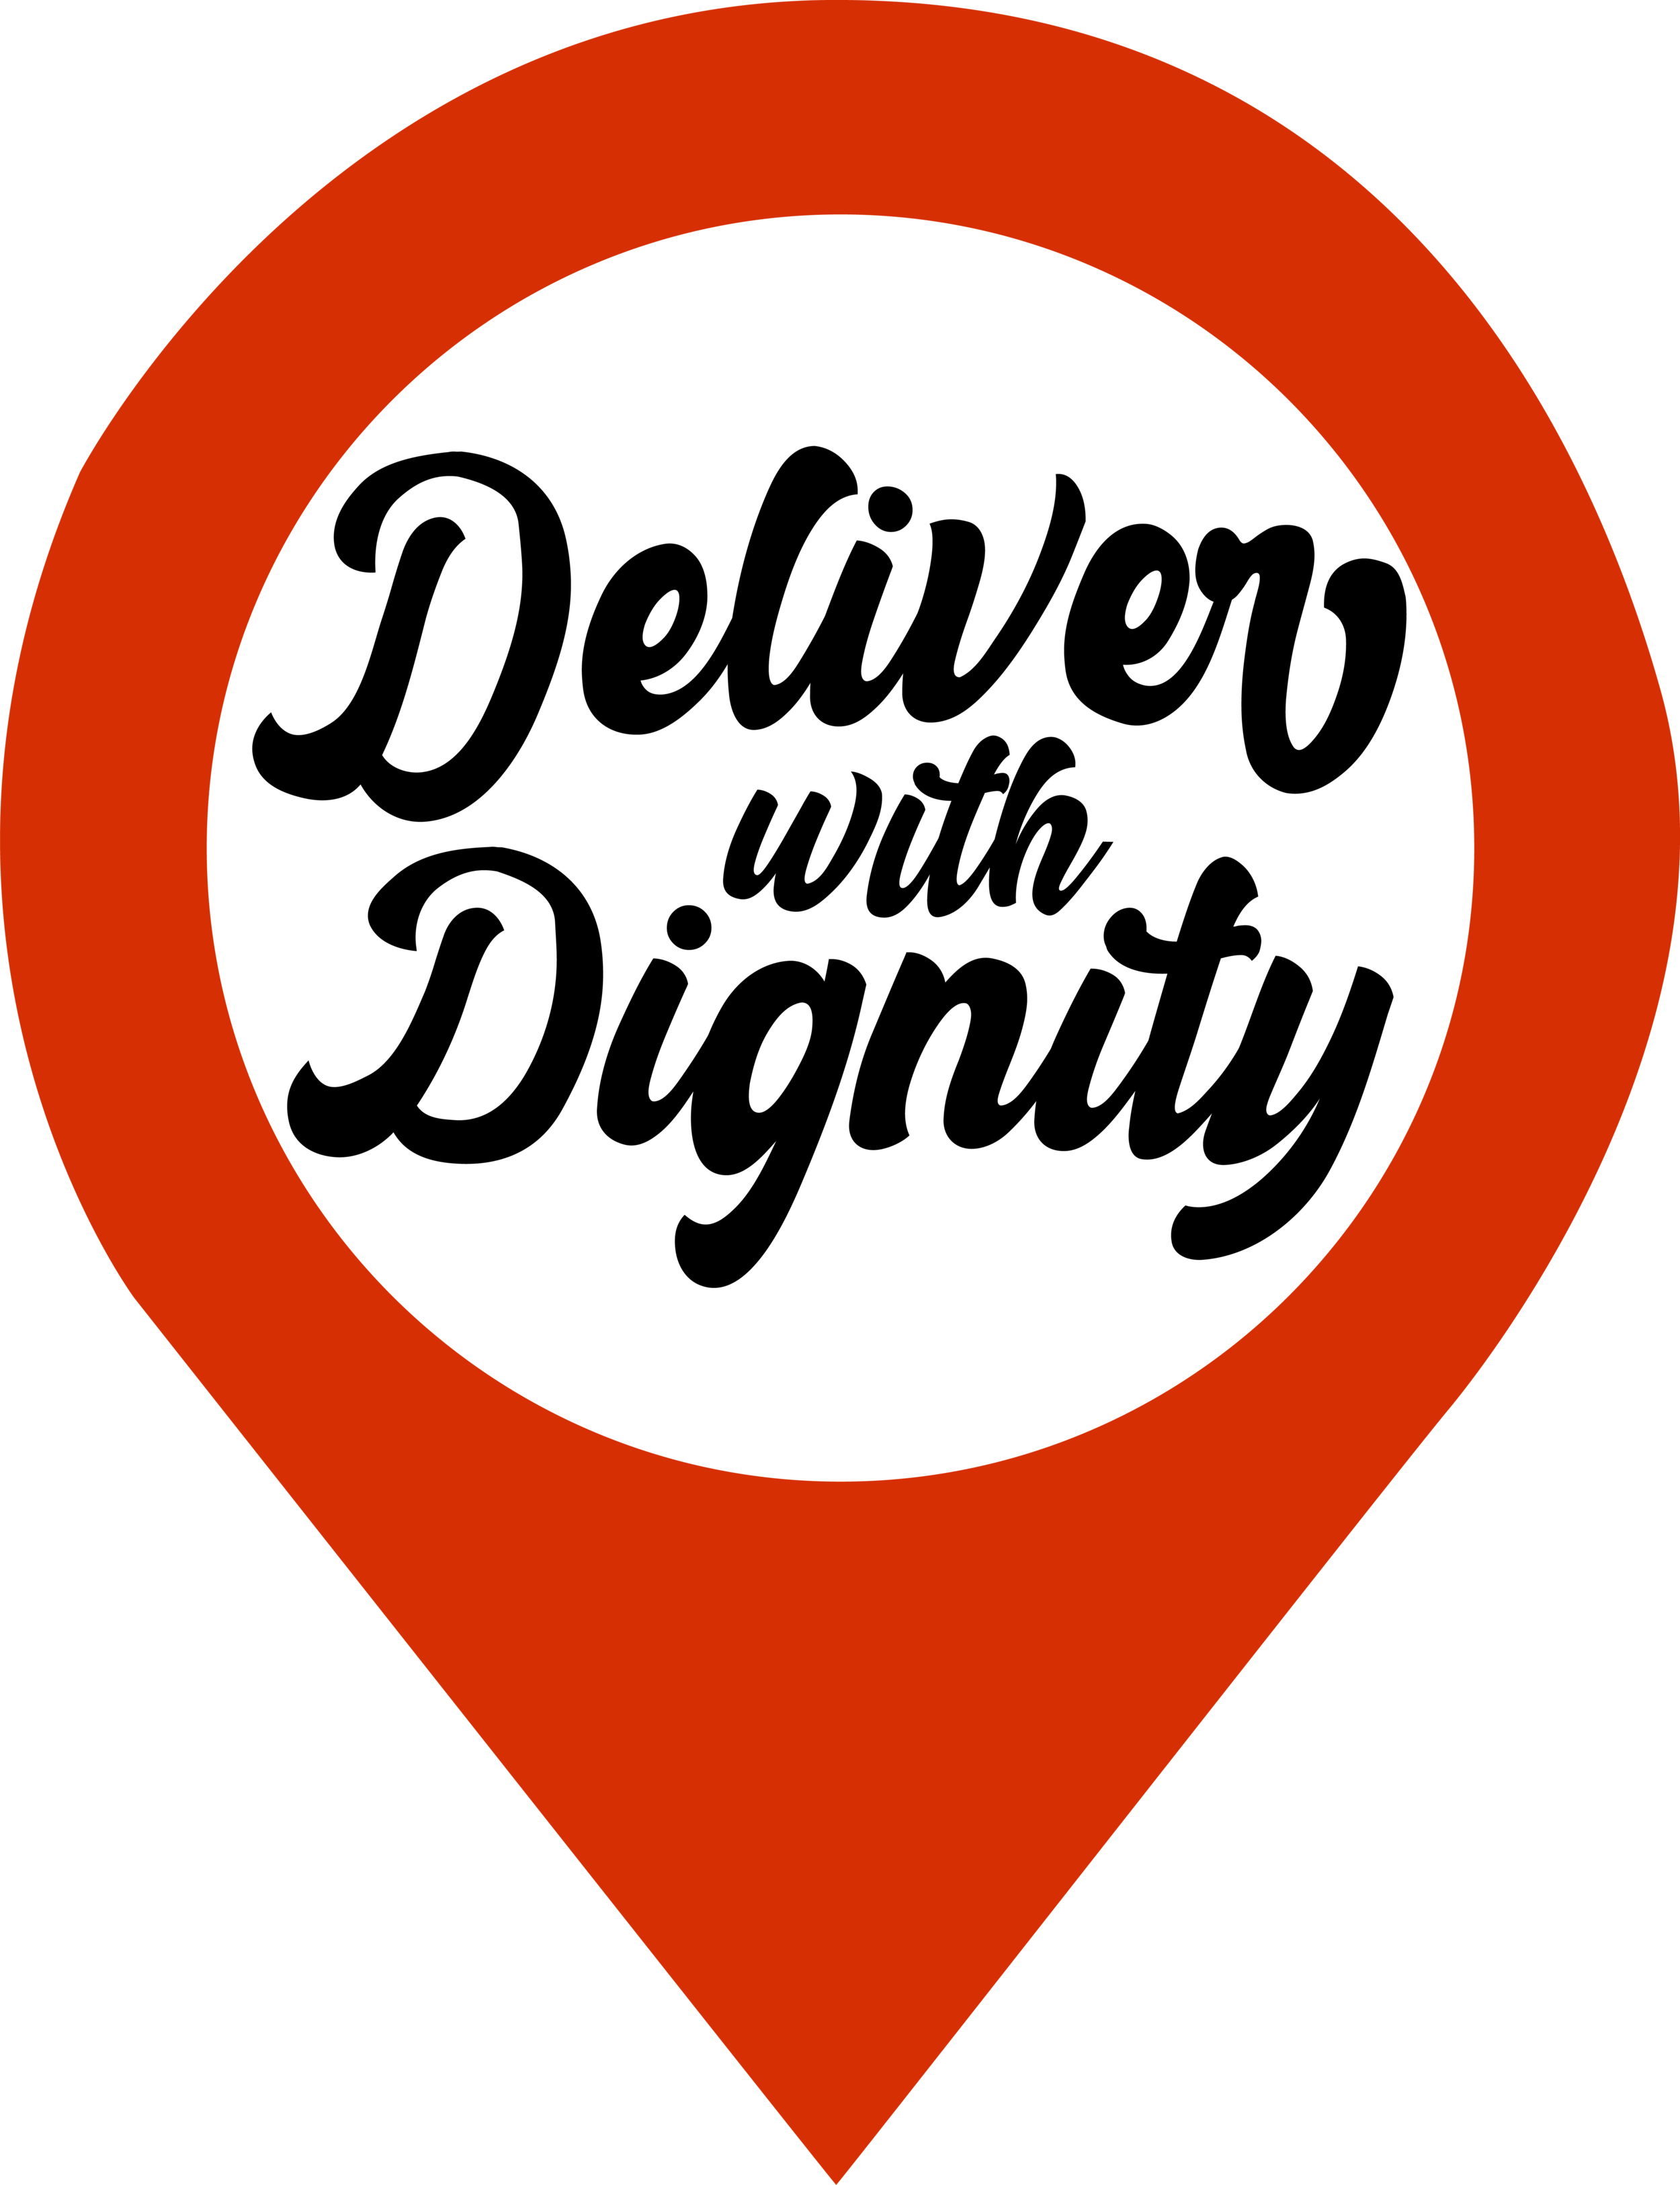 DoorDash Logo and Its History